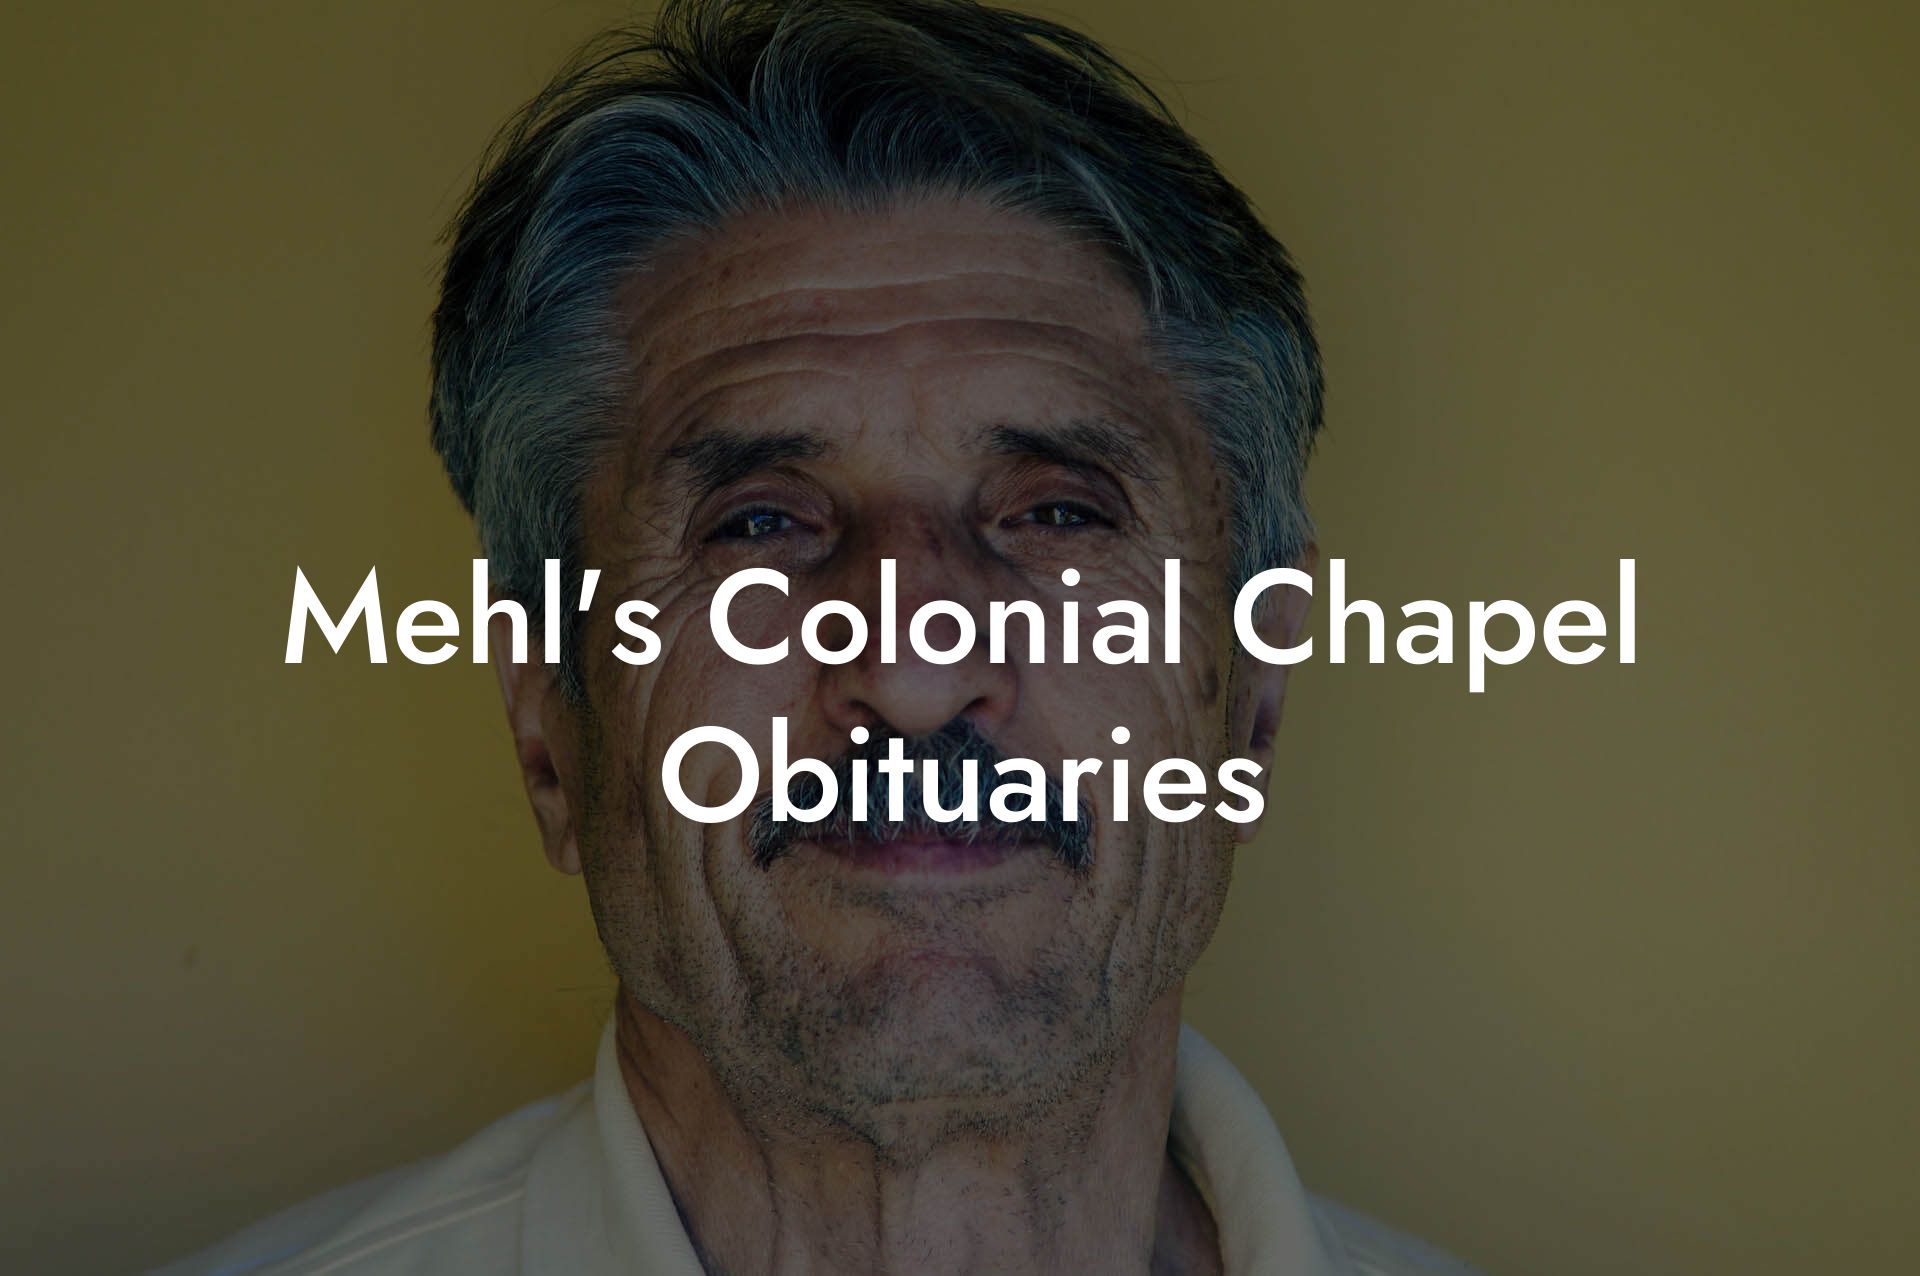 Mehl's Colonial Chapel Obituaries